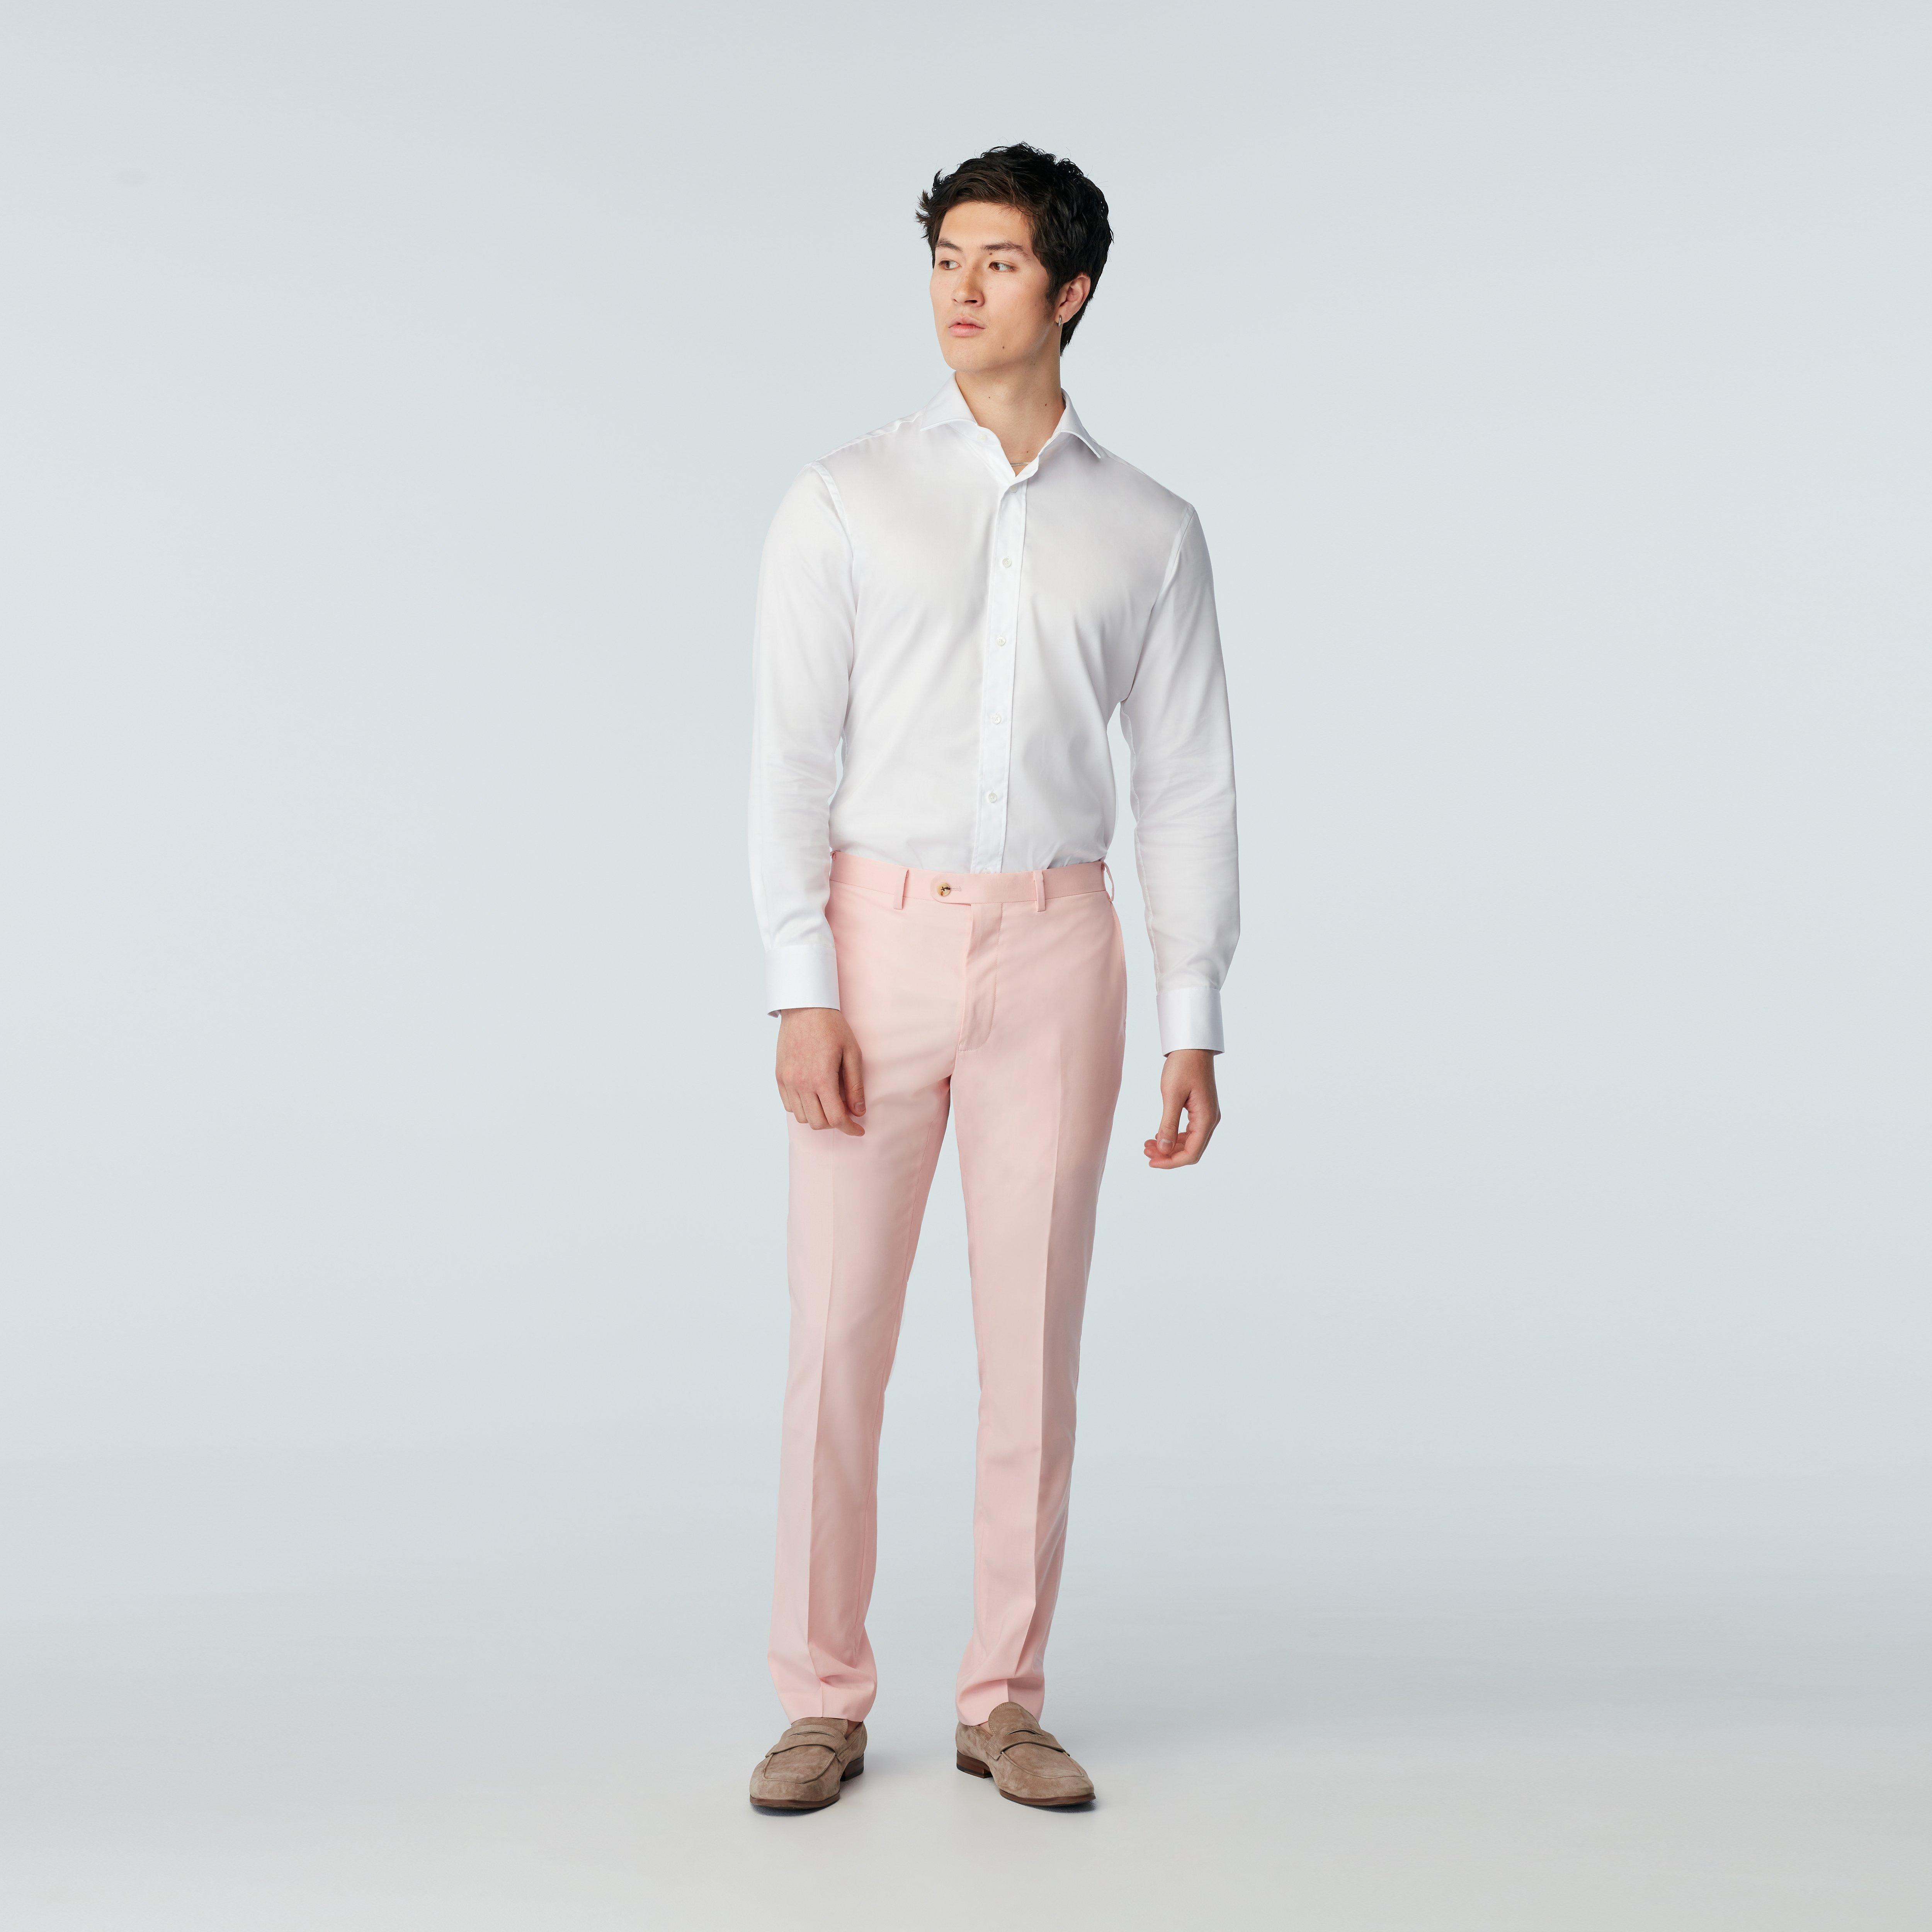 Milano Soft Pink Pants